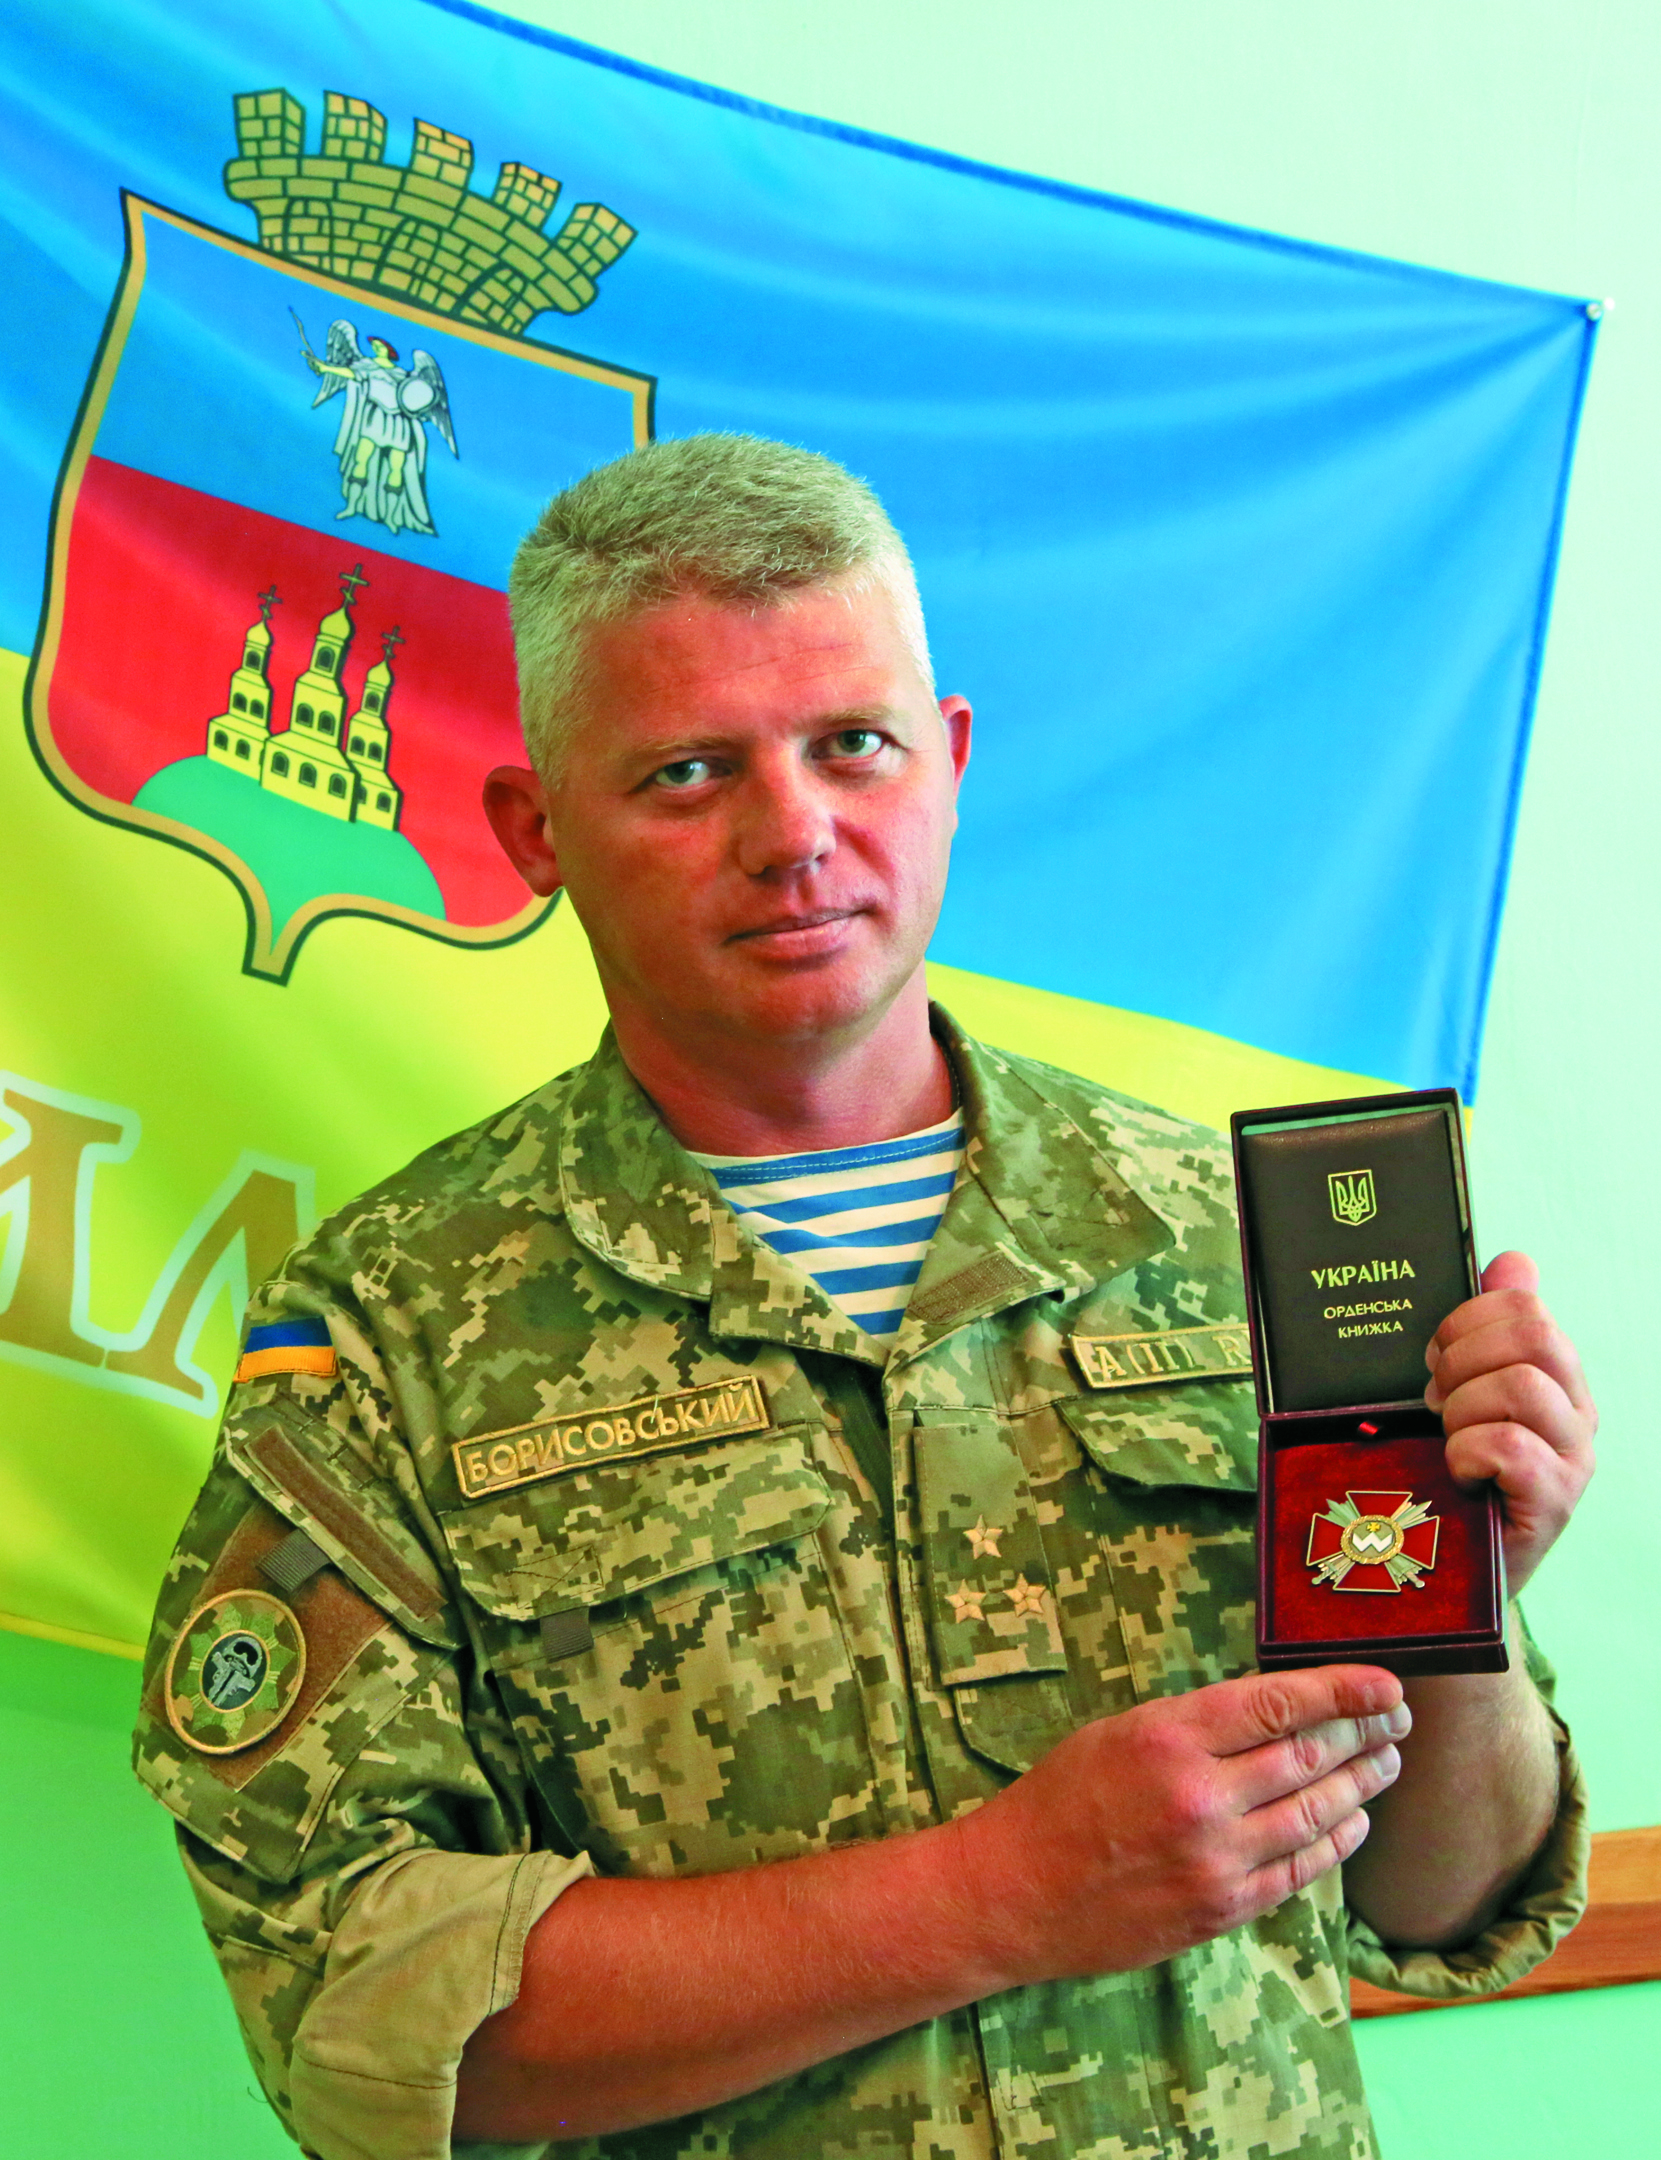 Орден Богдана Хмельницького ІІІ ступеня полковник Олександр Борисовський отримав, безумовно, заслужено.